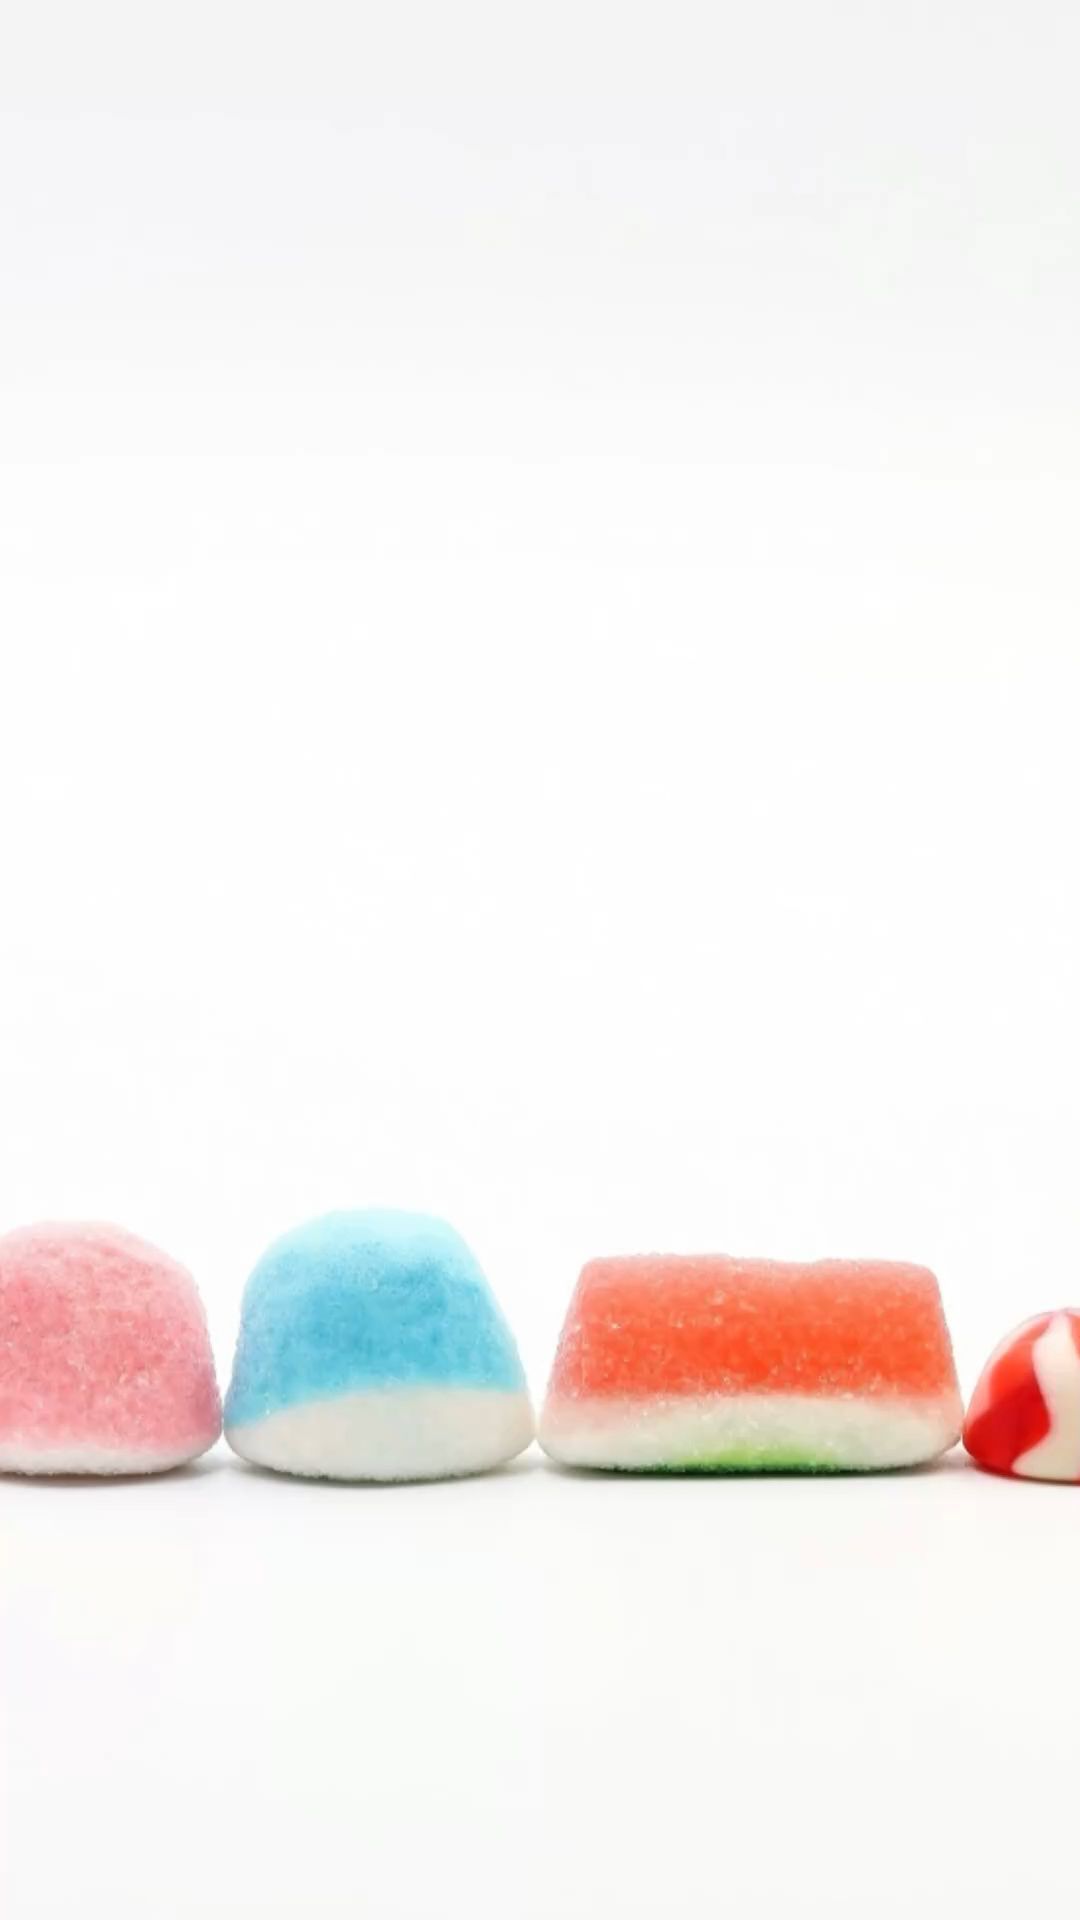 Signale für zu viel Zucker: 8 Anzeichen, dass Sie Ihren Naschi-Konsum überdenken sollten